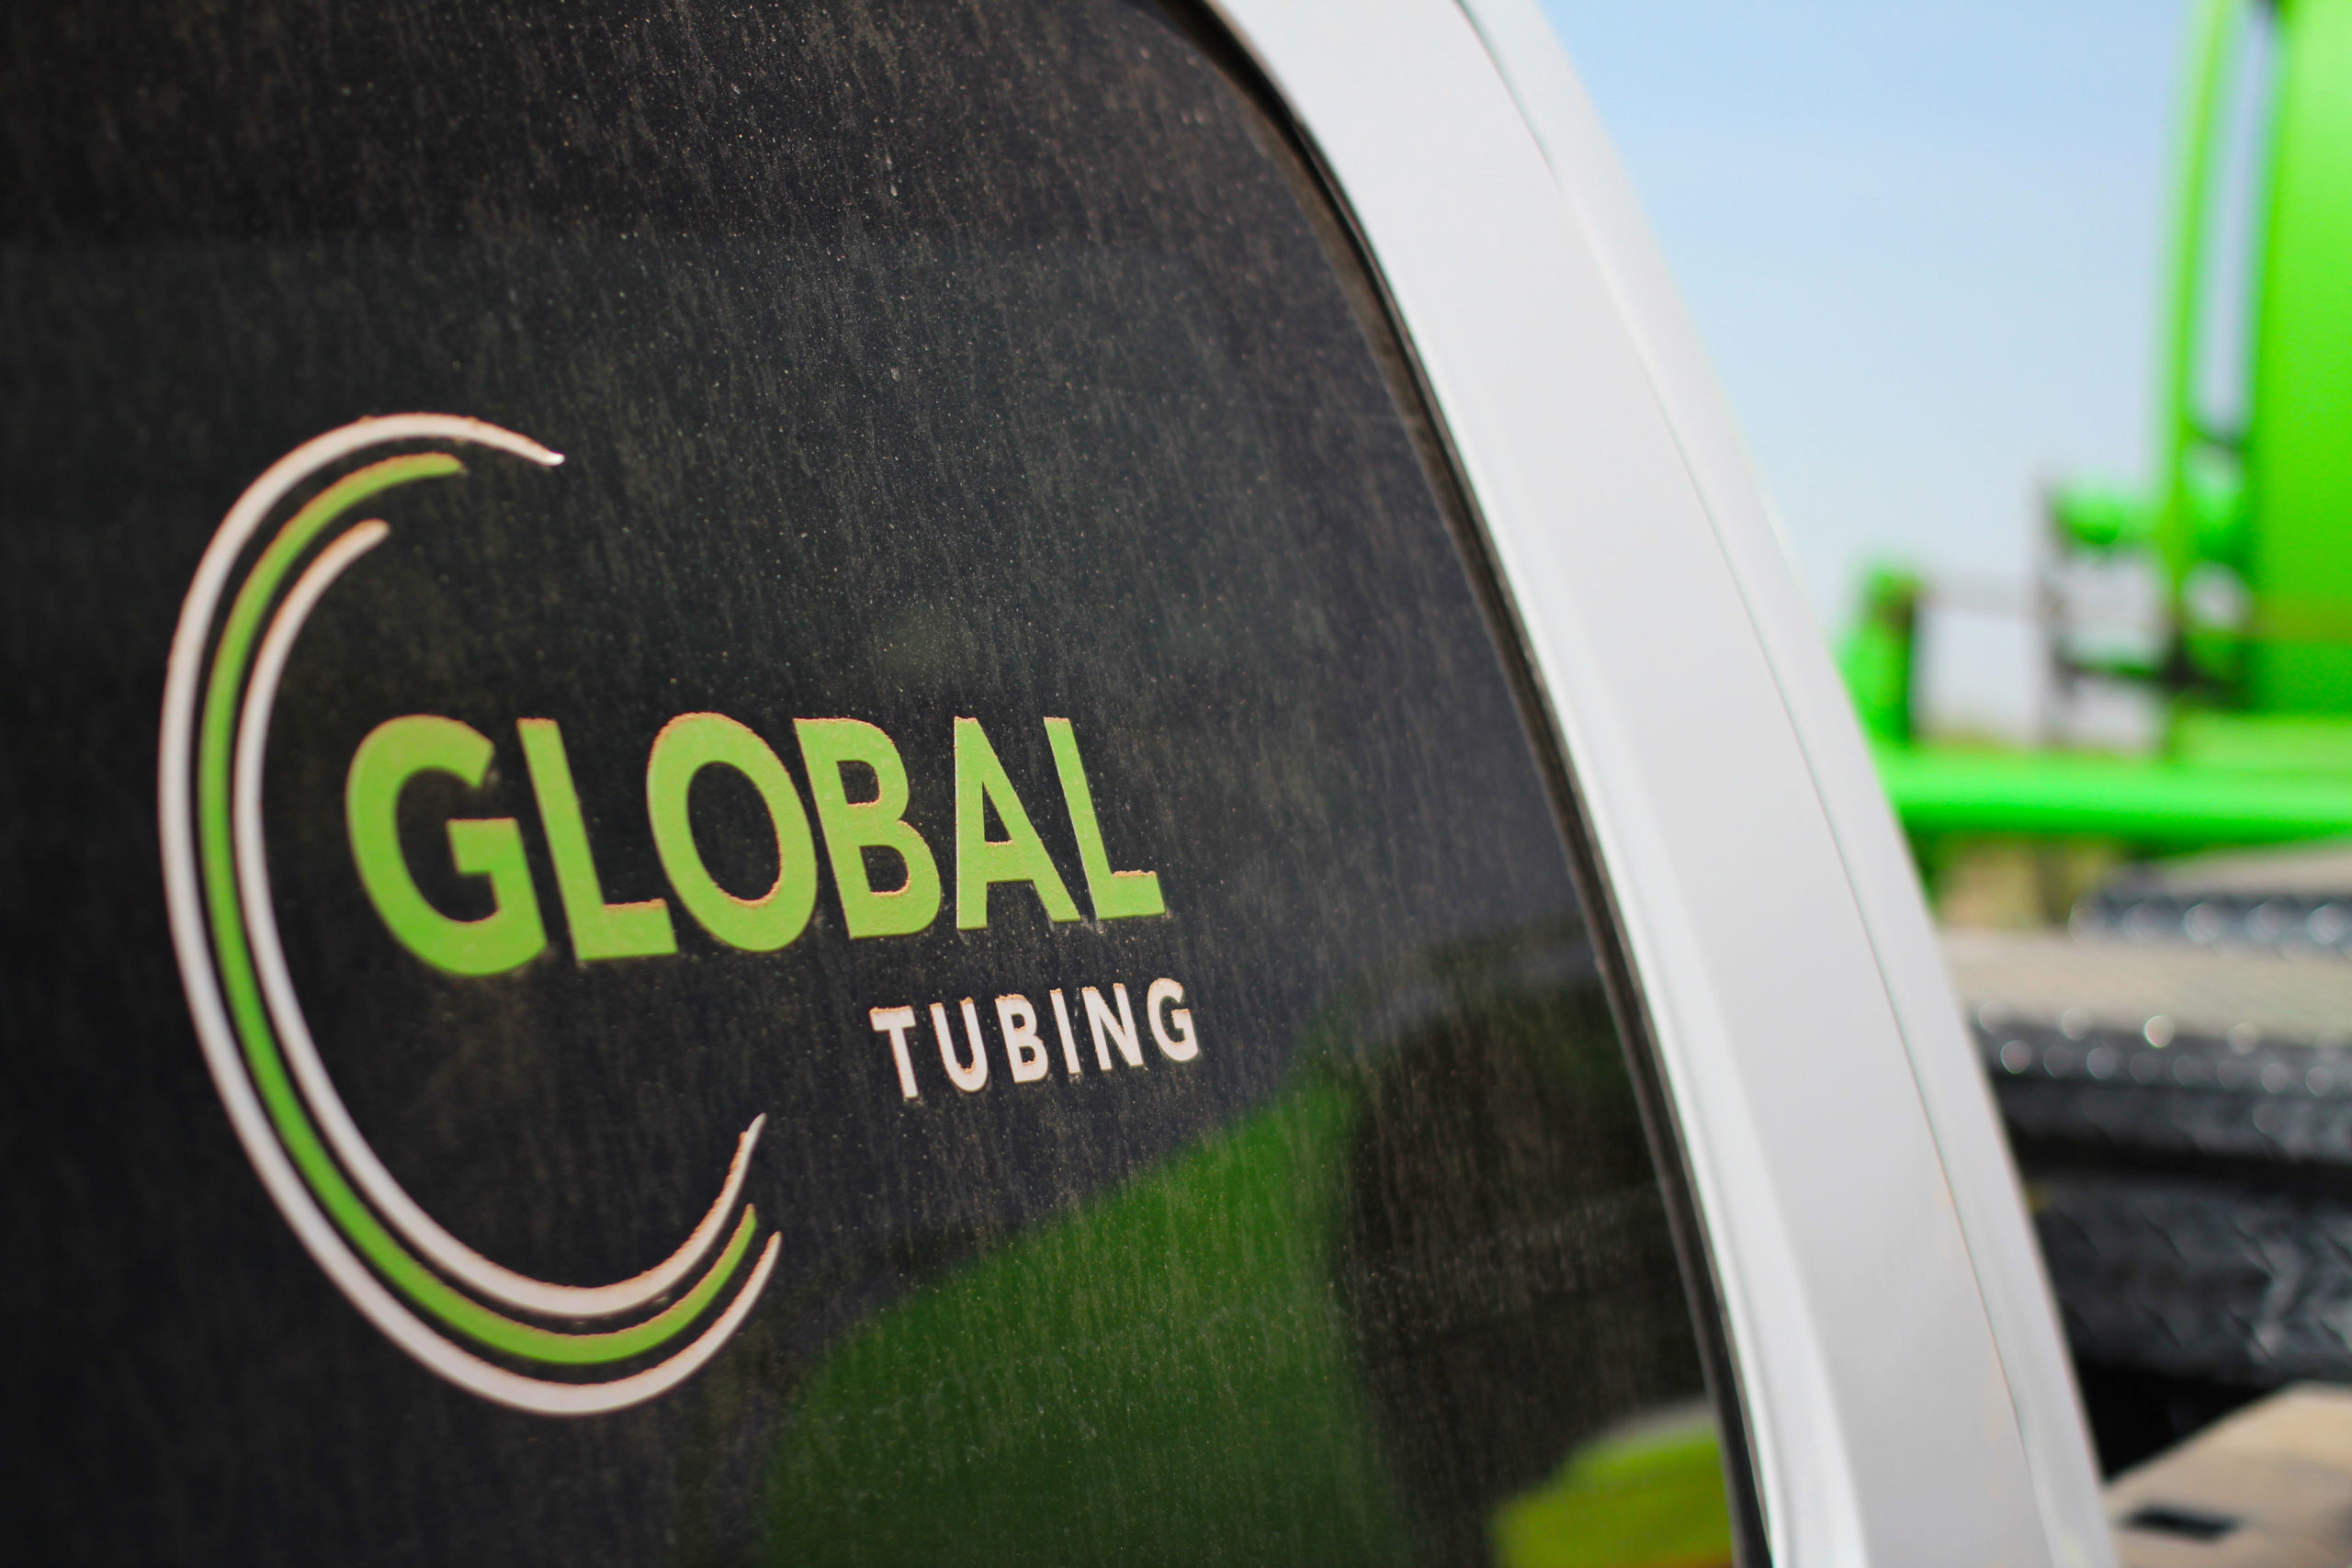 Global Tubing truck